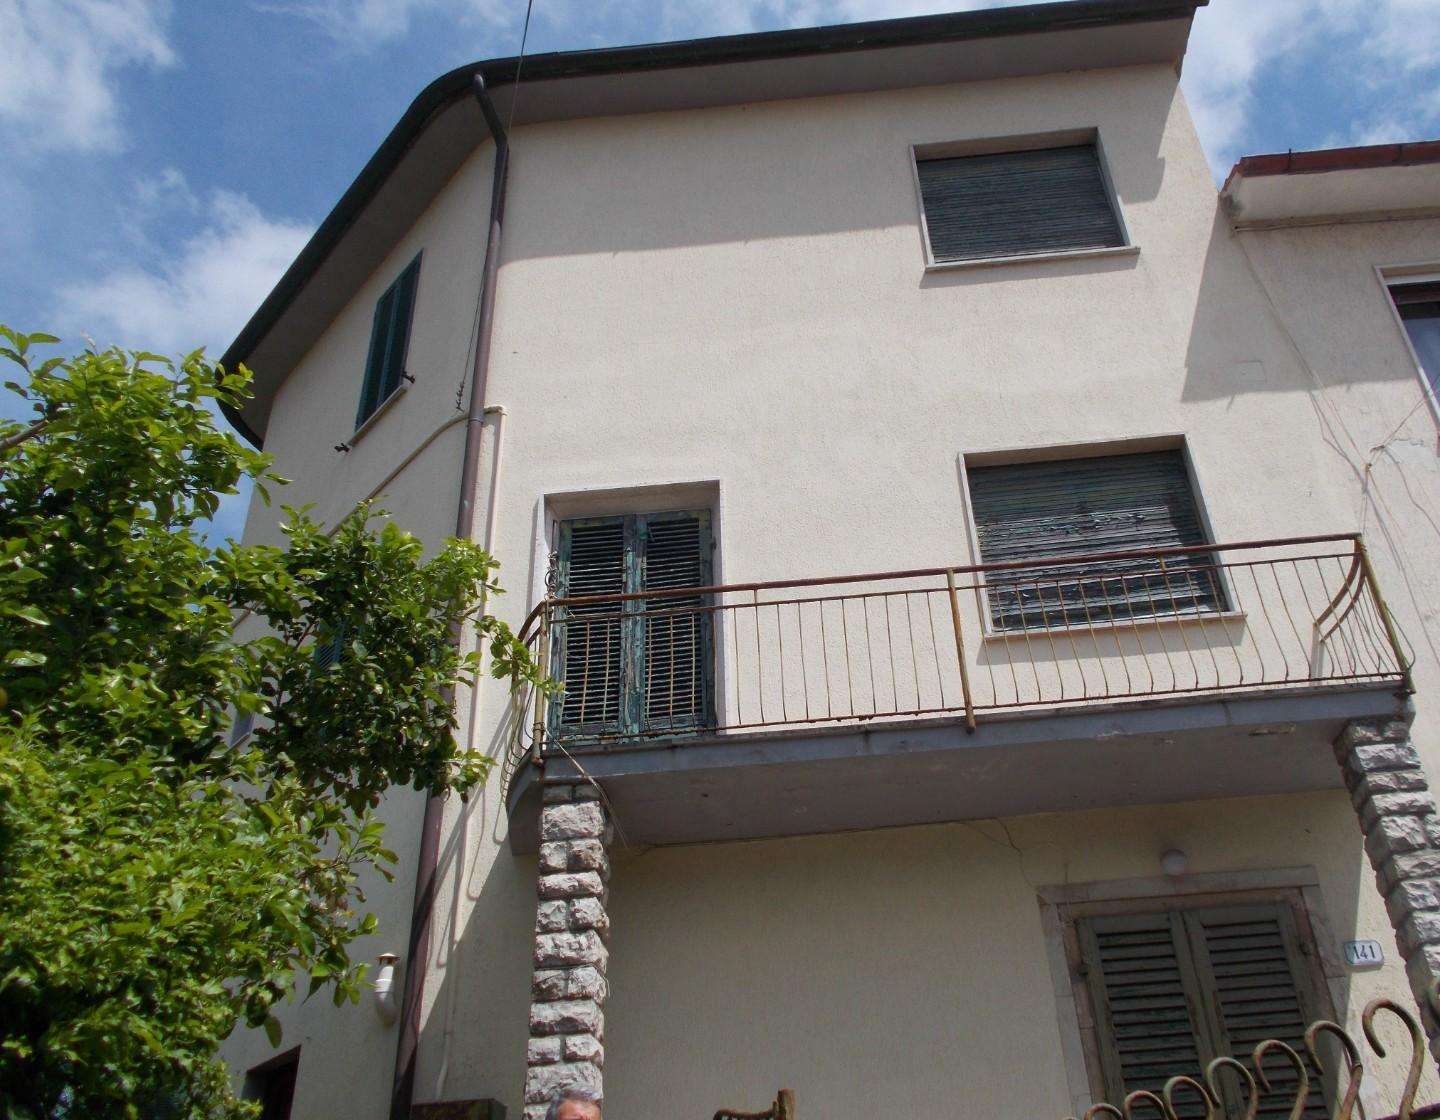 Palazzo - Stabile in Vendita a Vecchiano Viale Gambacorti, 56019